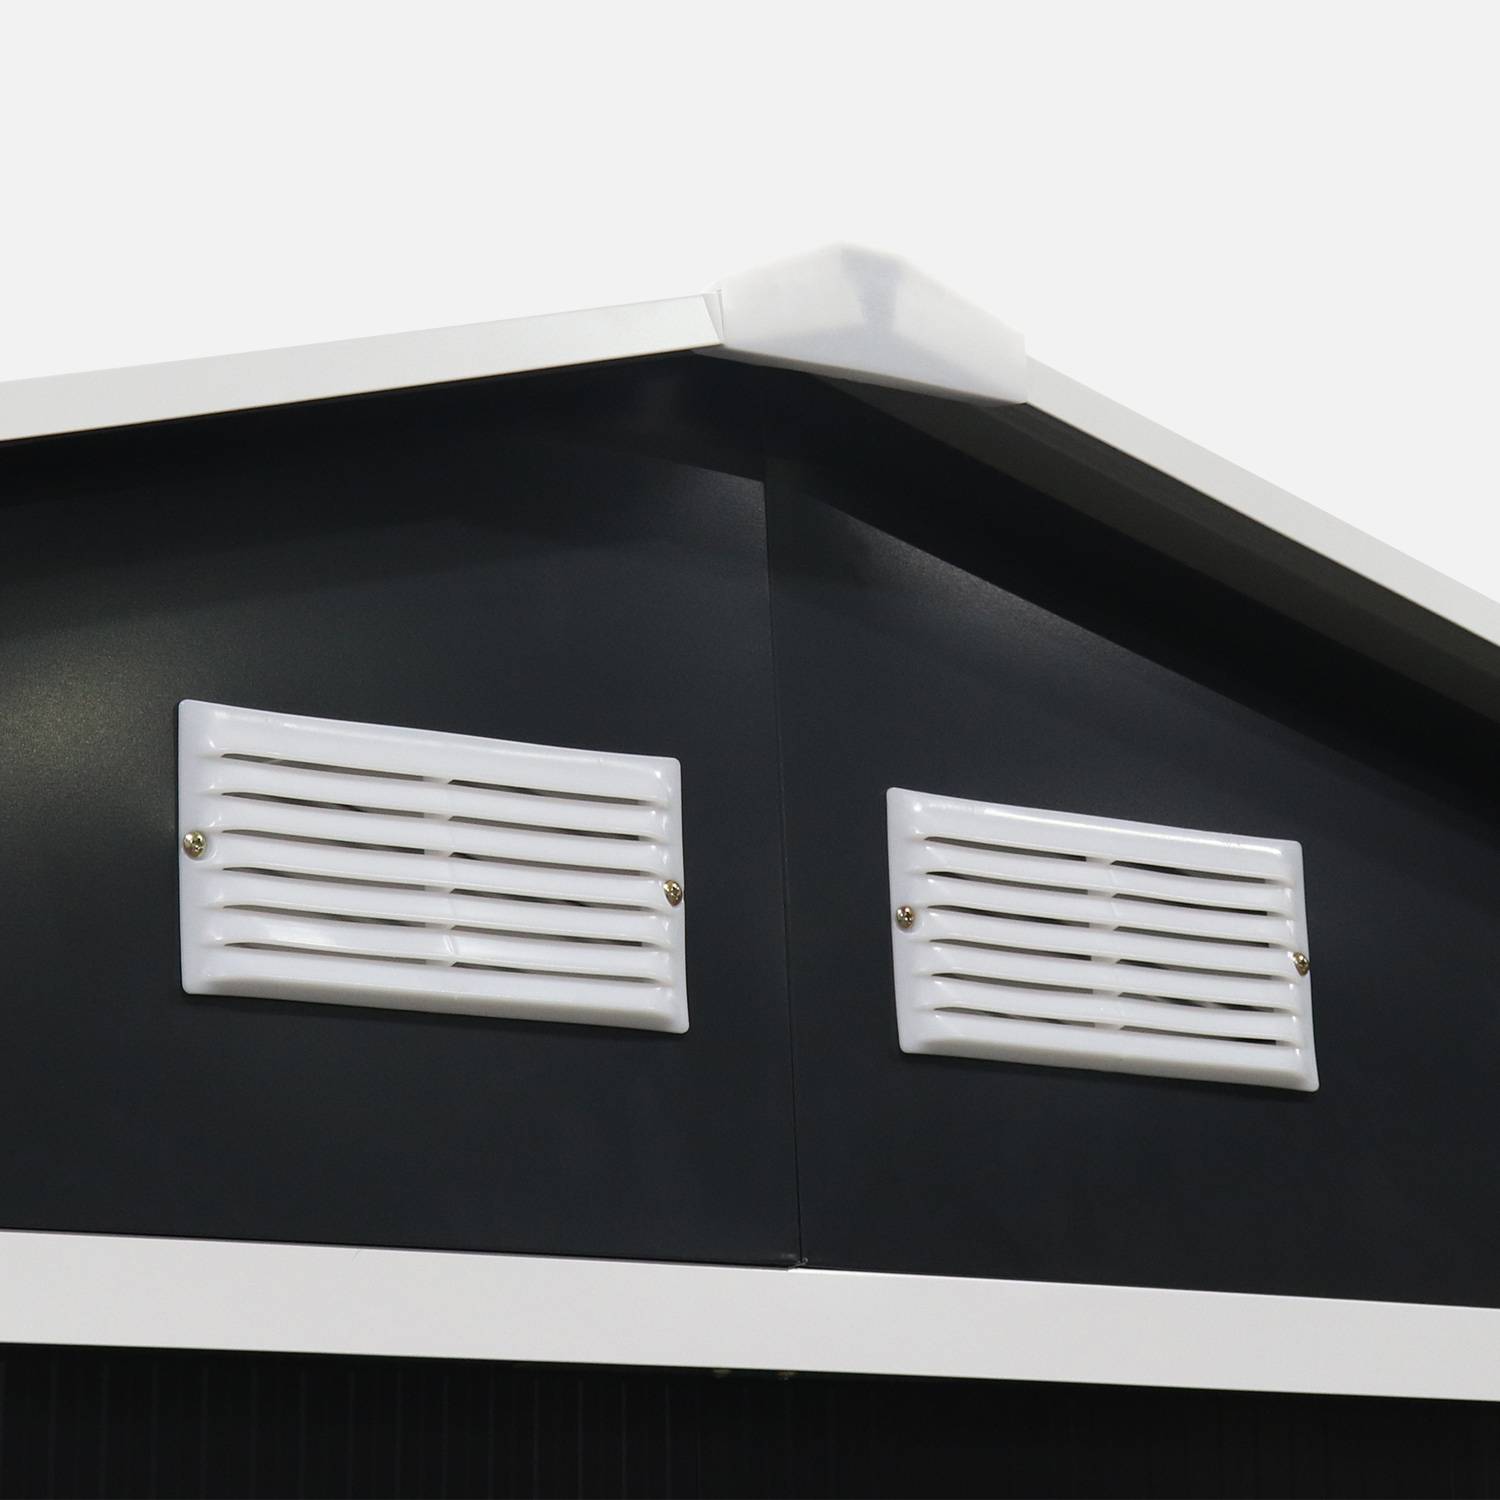 Galpão metálico - Calaisis - 7,06m² cinza antracite e branco - Galpão de ferramentas com duas portas deslizantes, kit de fixação incluído, galpão de arrumação, arrecadação,sweeek,Photo5